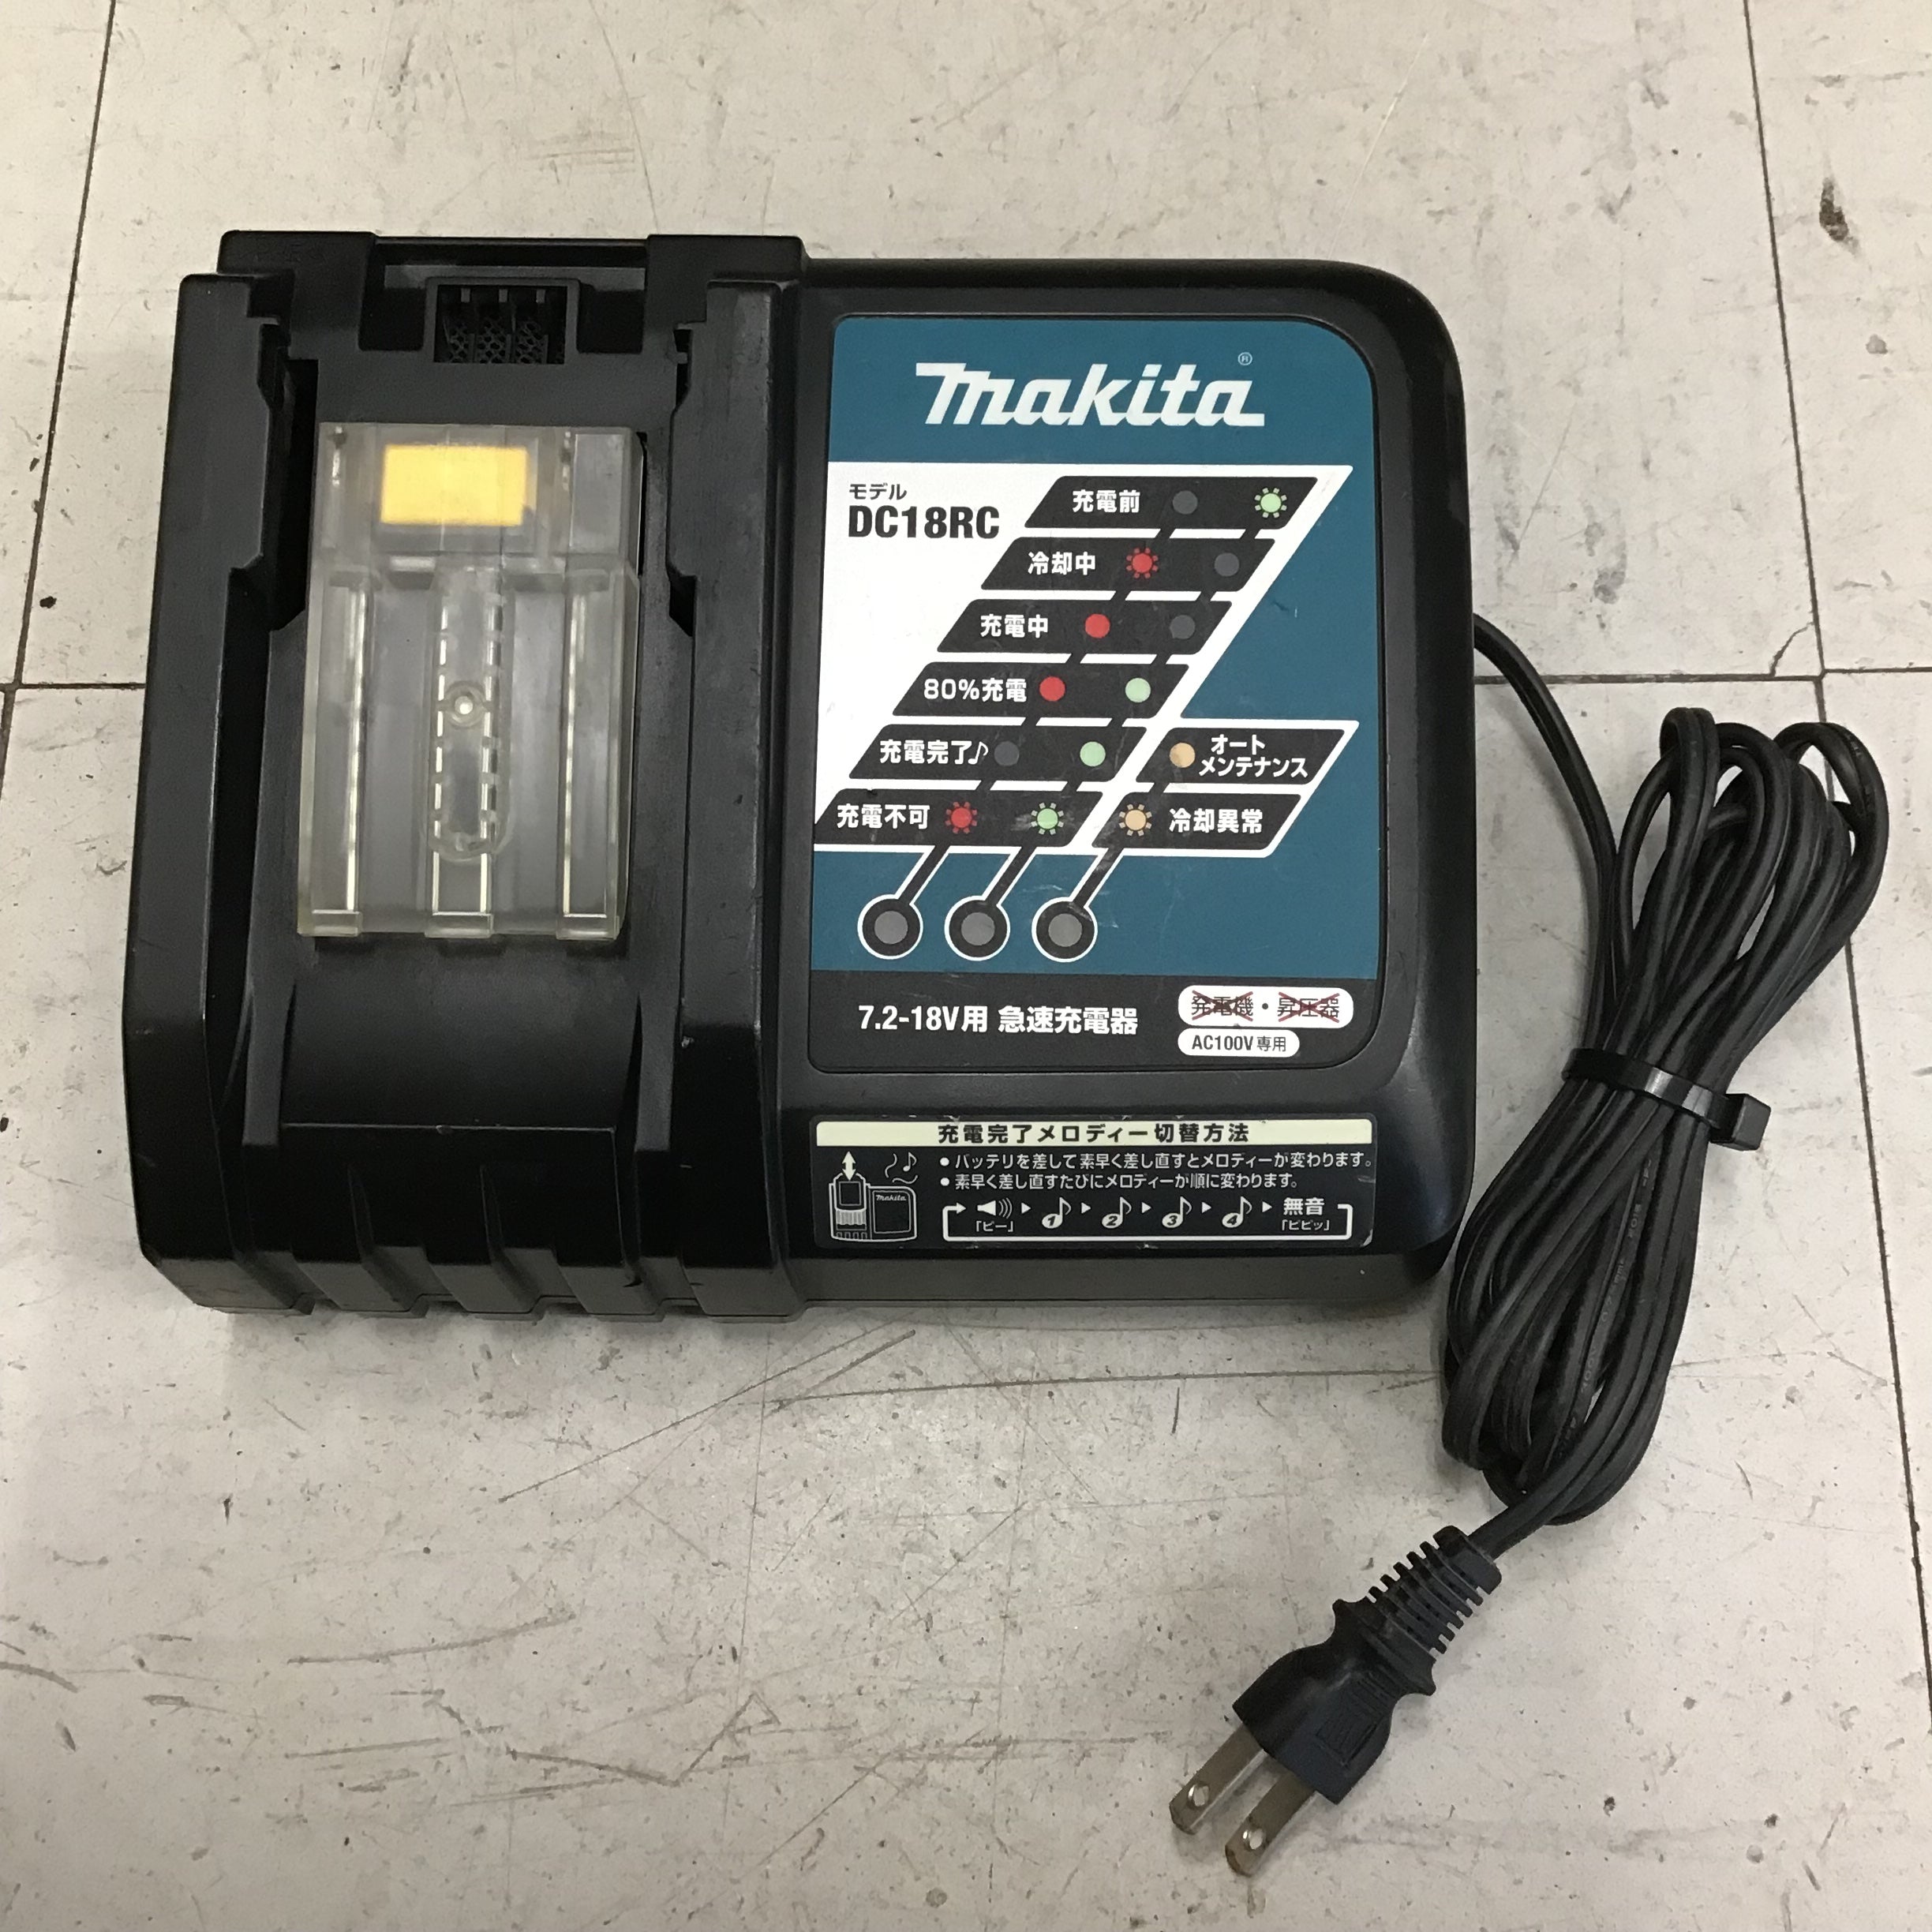 マキタ マキタ 18V 充電式タッカ ST112DZK (本体+ケース)【RT線】 電動工具